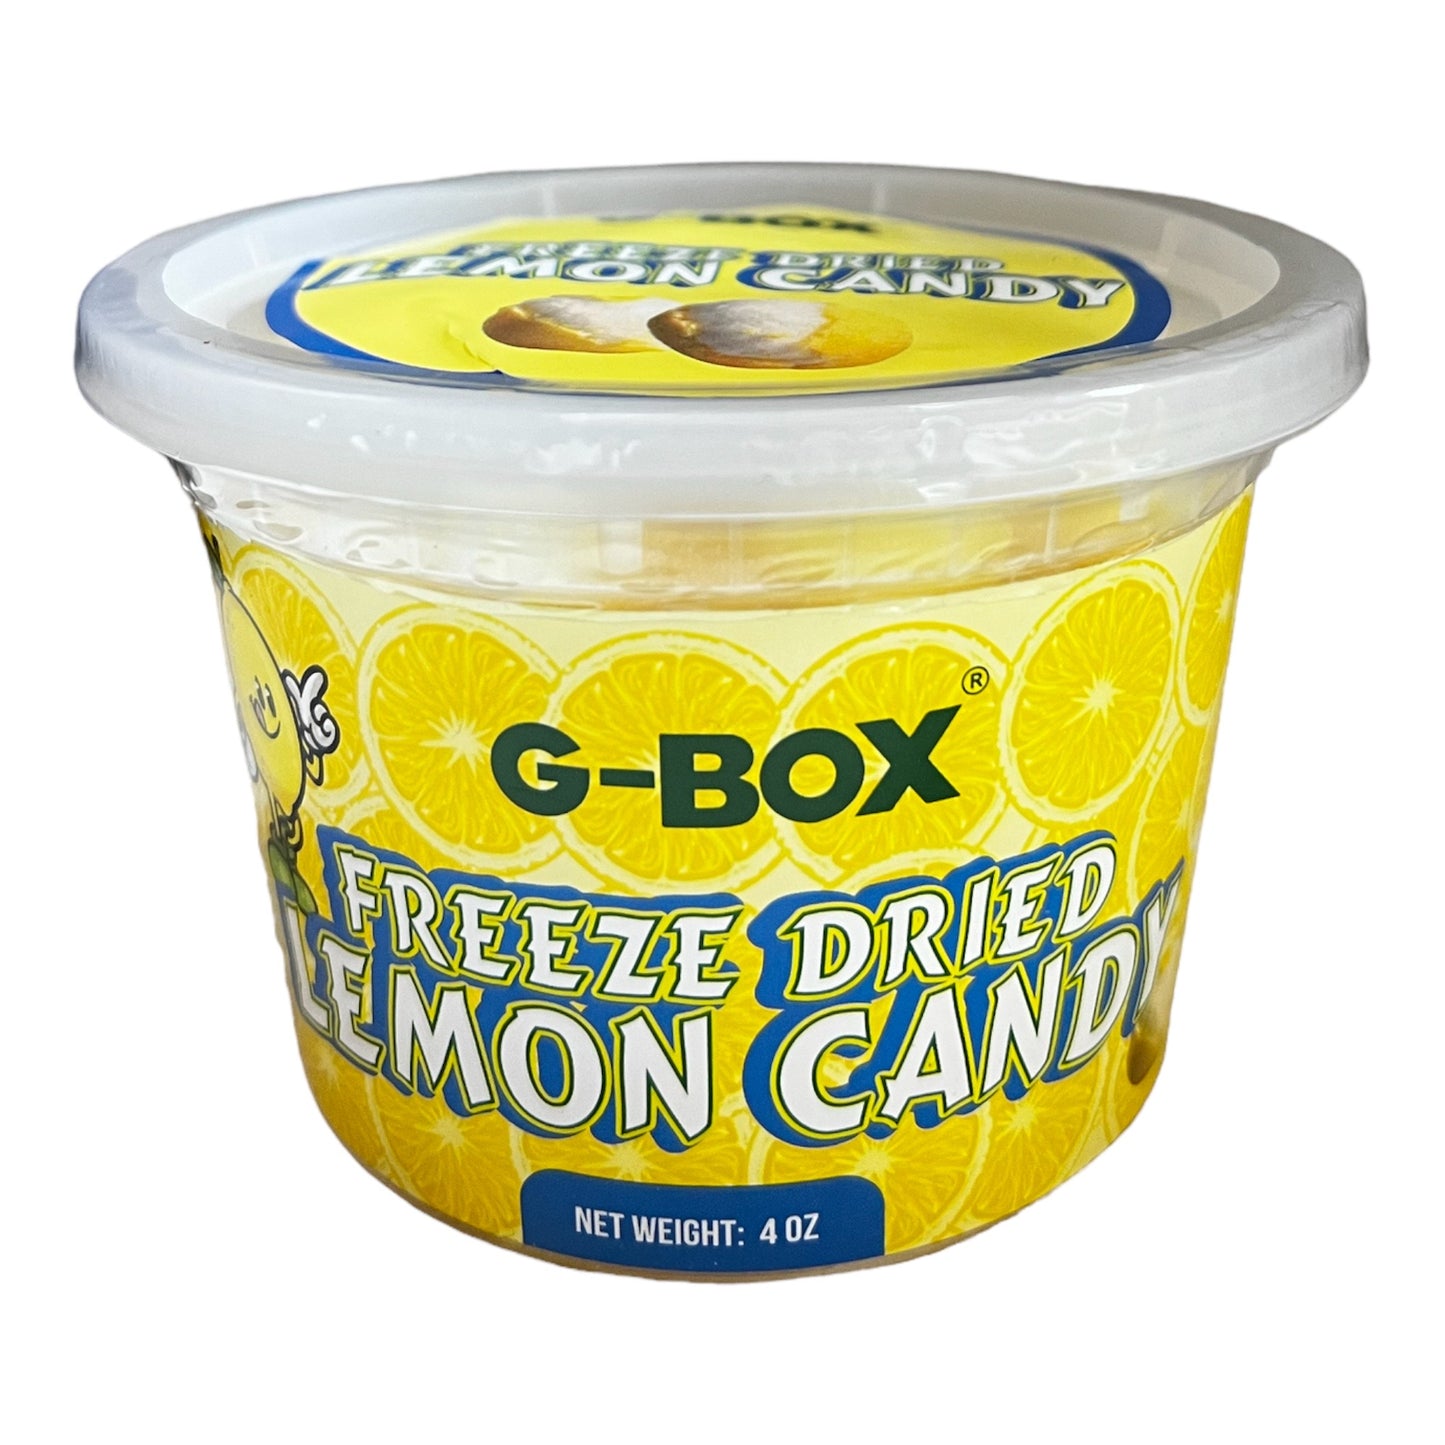 G-BOX Freeze Dried Lemon Candy